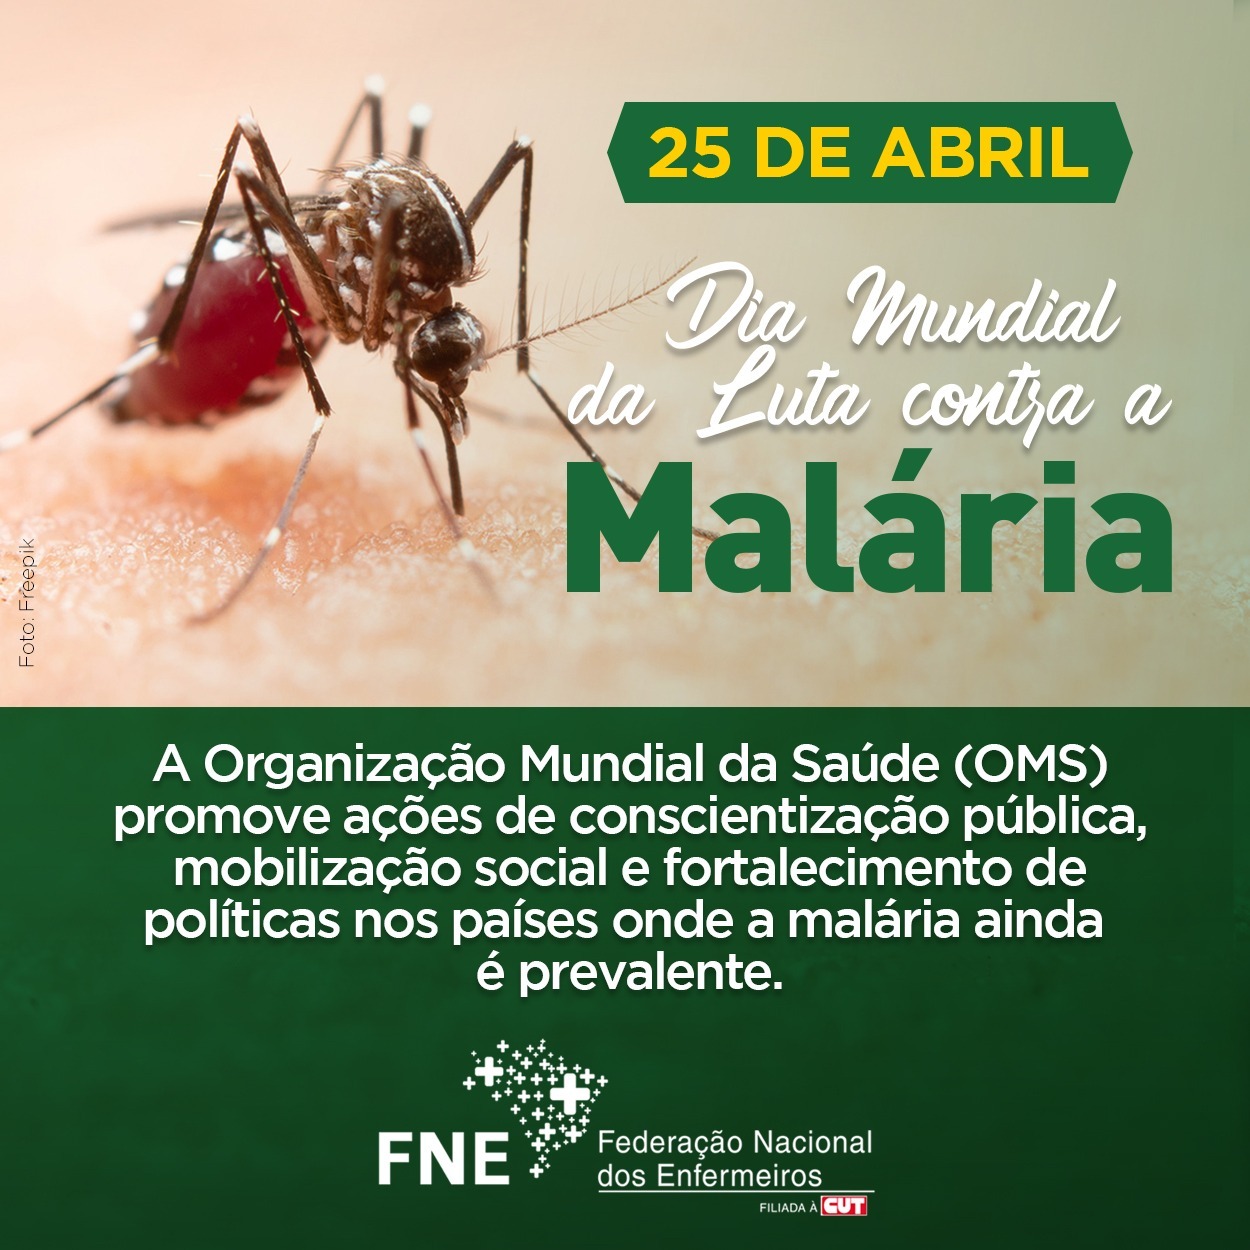 25 de abril - Dia Mundial da Luta Contra a Malária